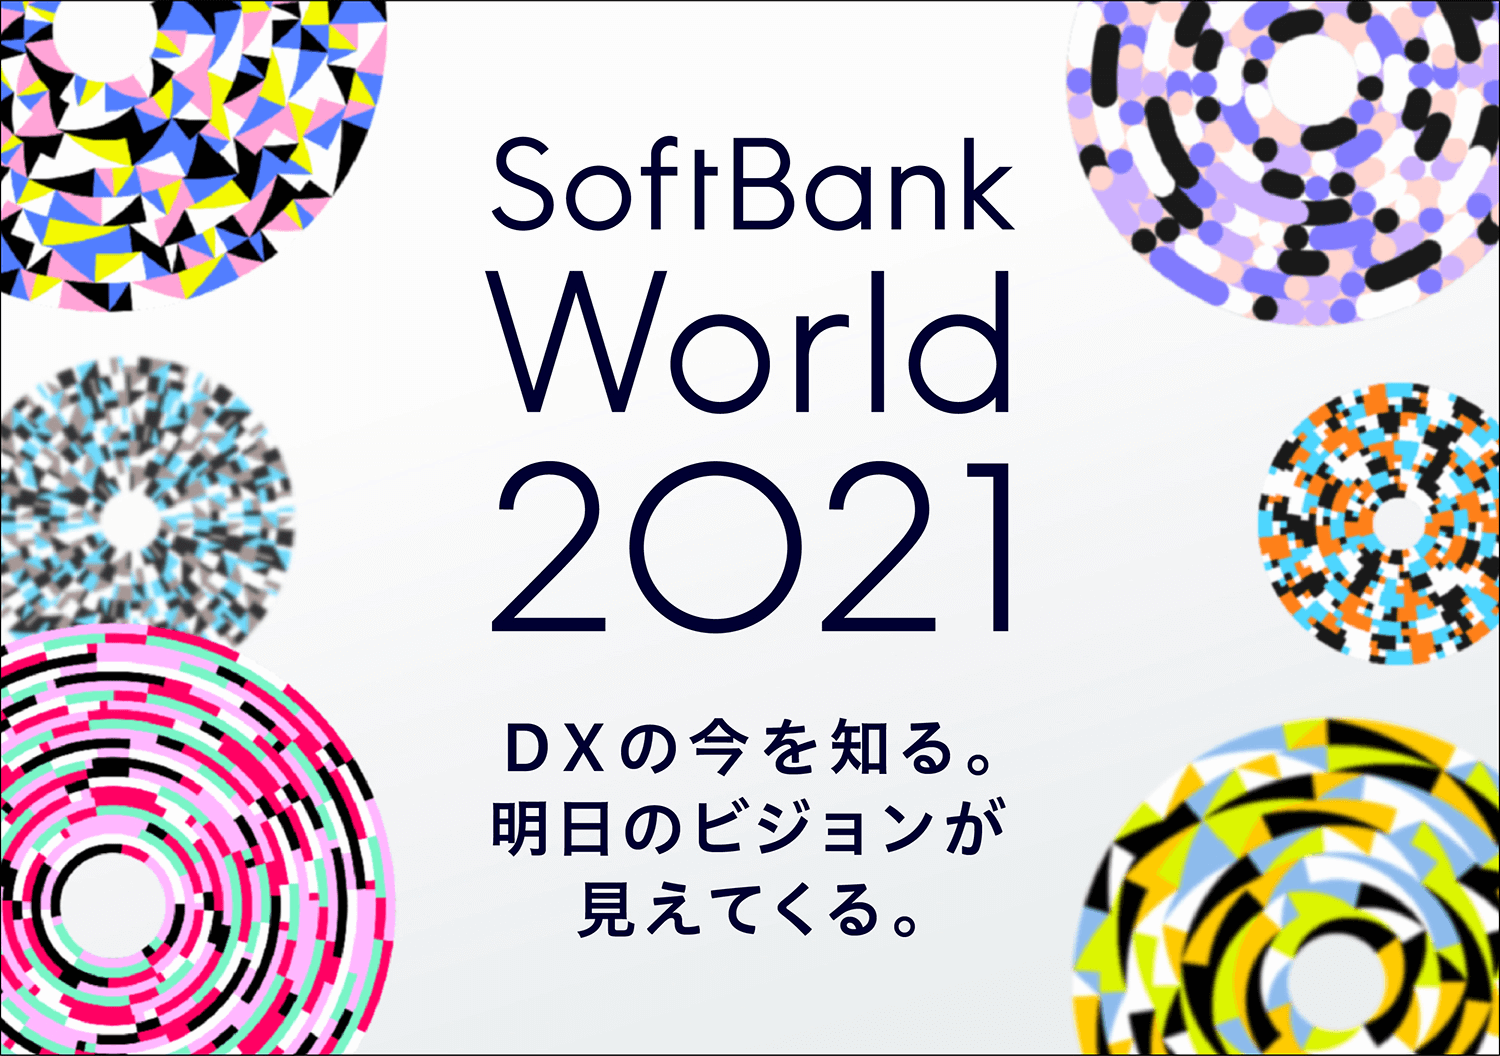 大規模法人イベント「SoftBank World 2021」